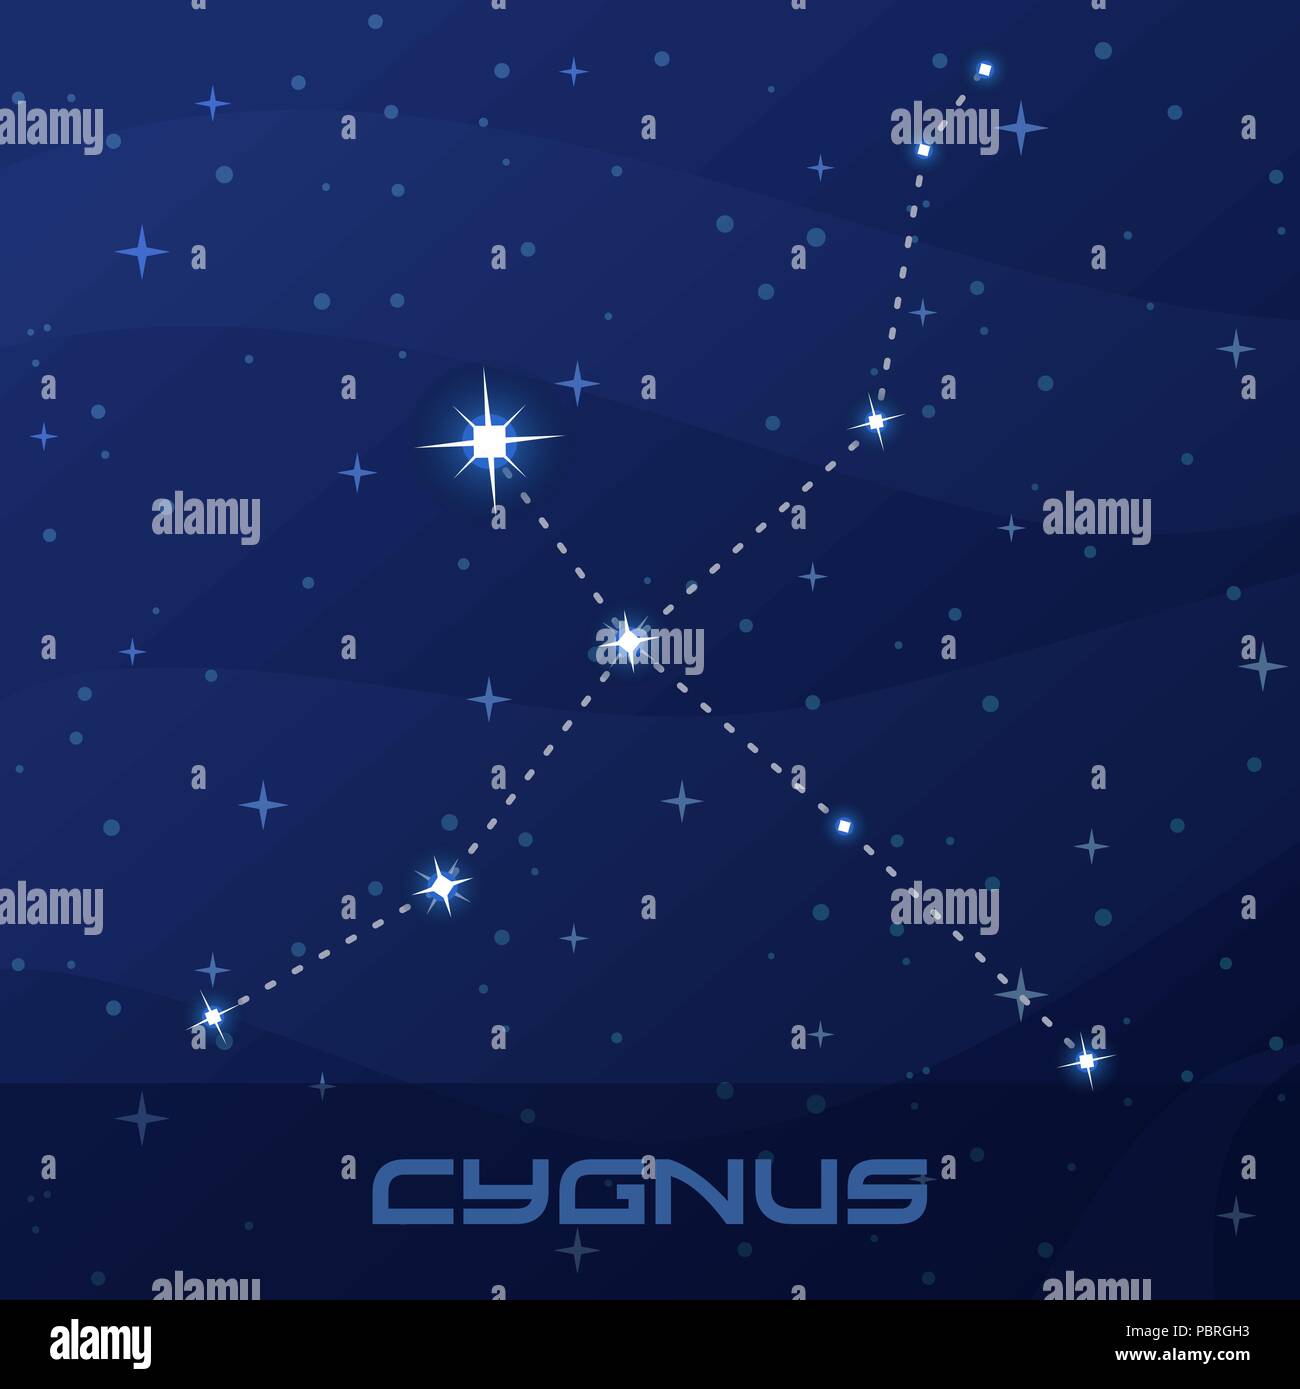 La constelaciãn de cygnus el cisne night star sky imagen vector de stock